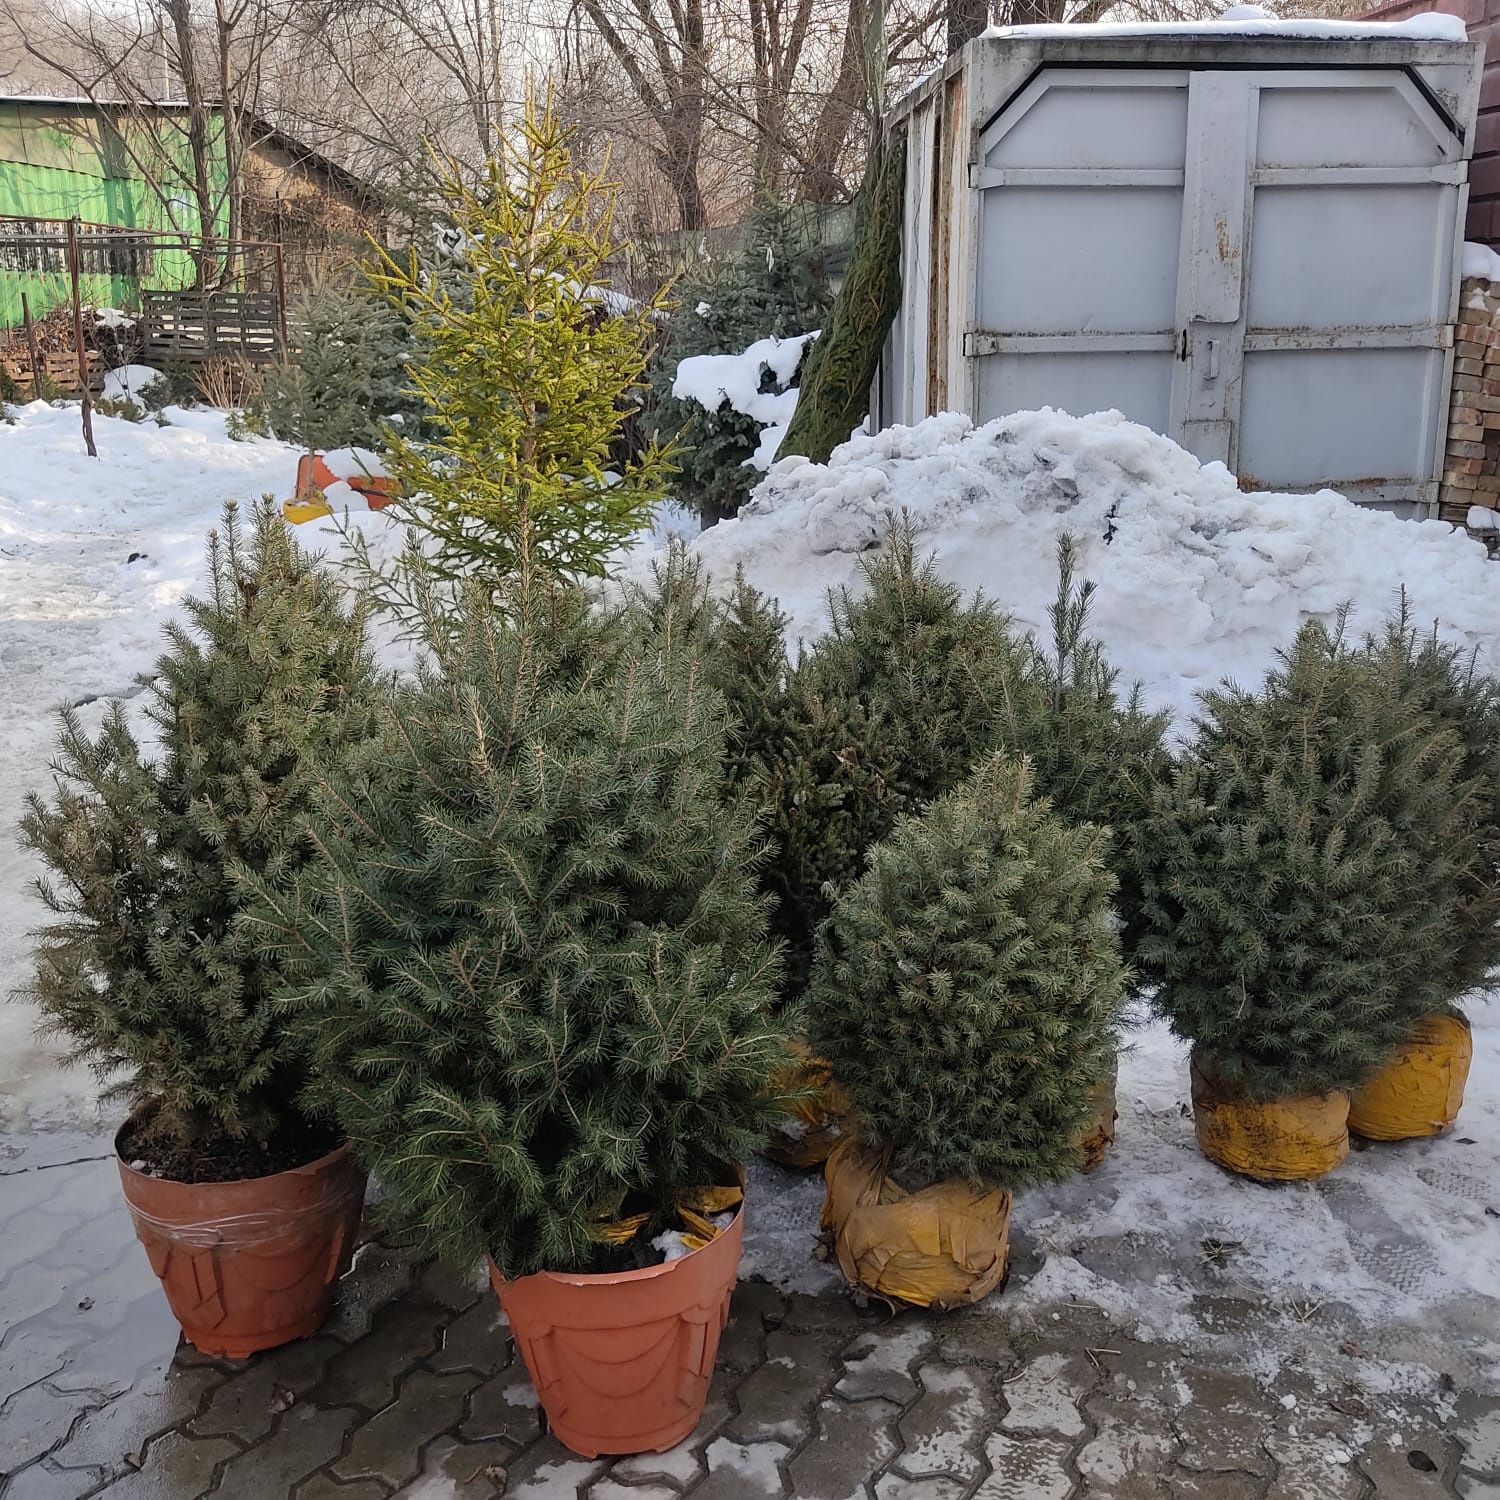 Ель Тянь-шанская 1 м - 20000 тг., купить елки оптом в Алматы